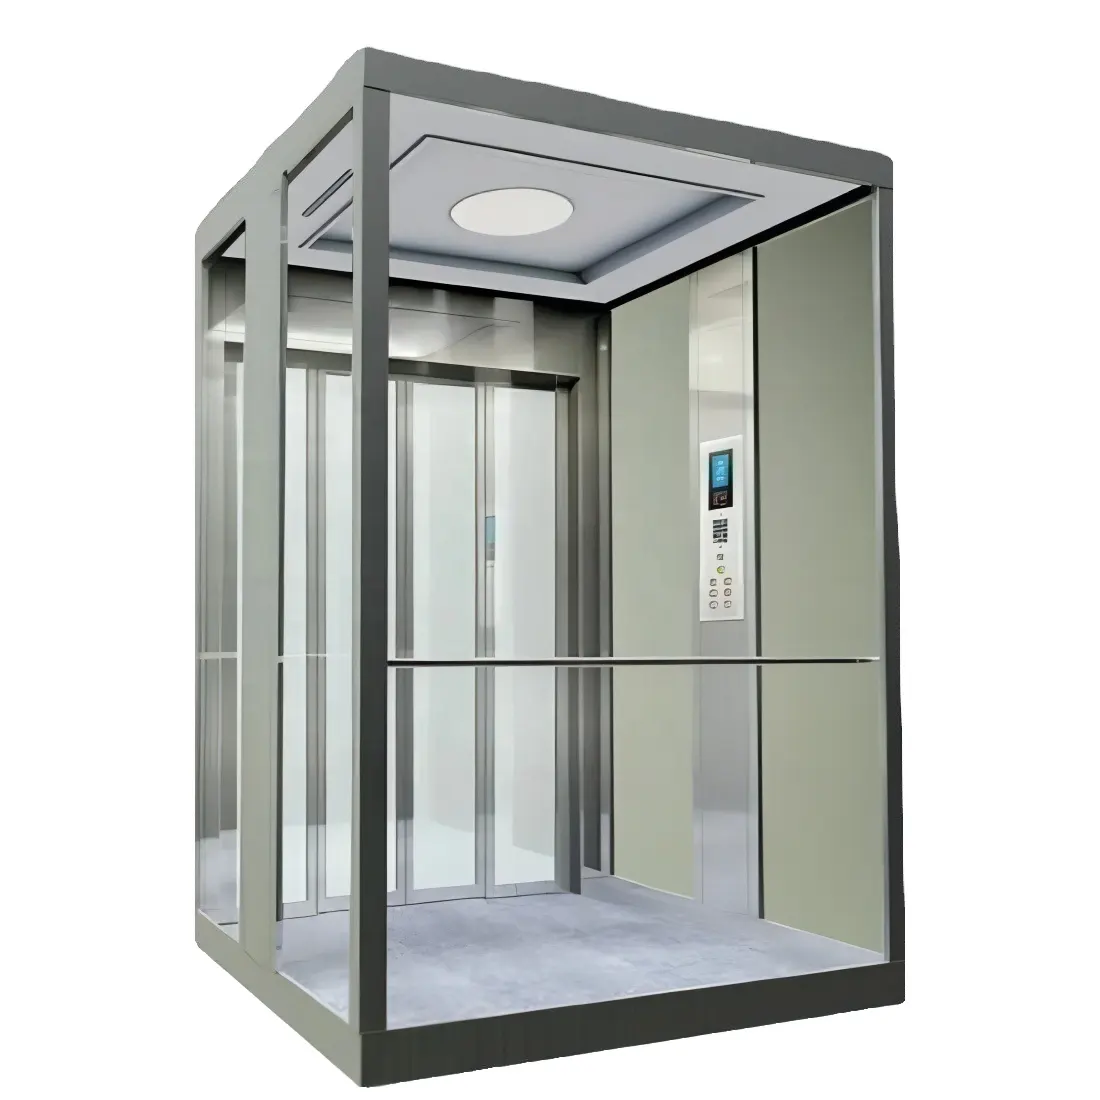 Preisgünstige hydraulische persönliche Aufzüge für den Wohnbereich 4 Stockwerke panorama glas für den Aufzug auf dem Haus Aufzug